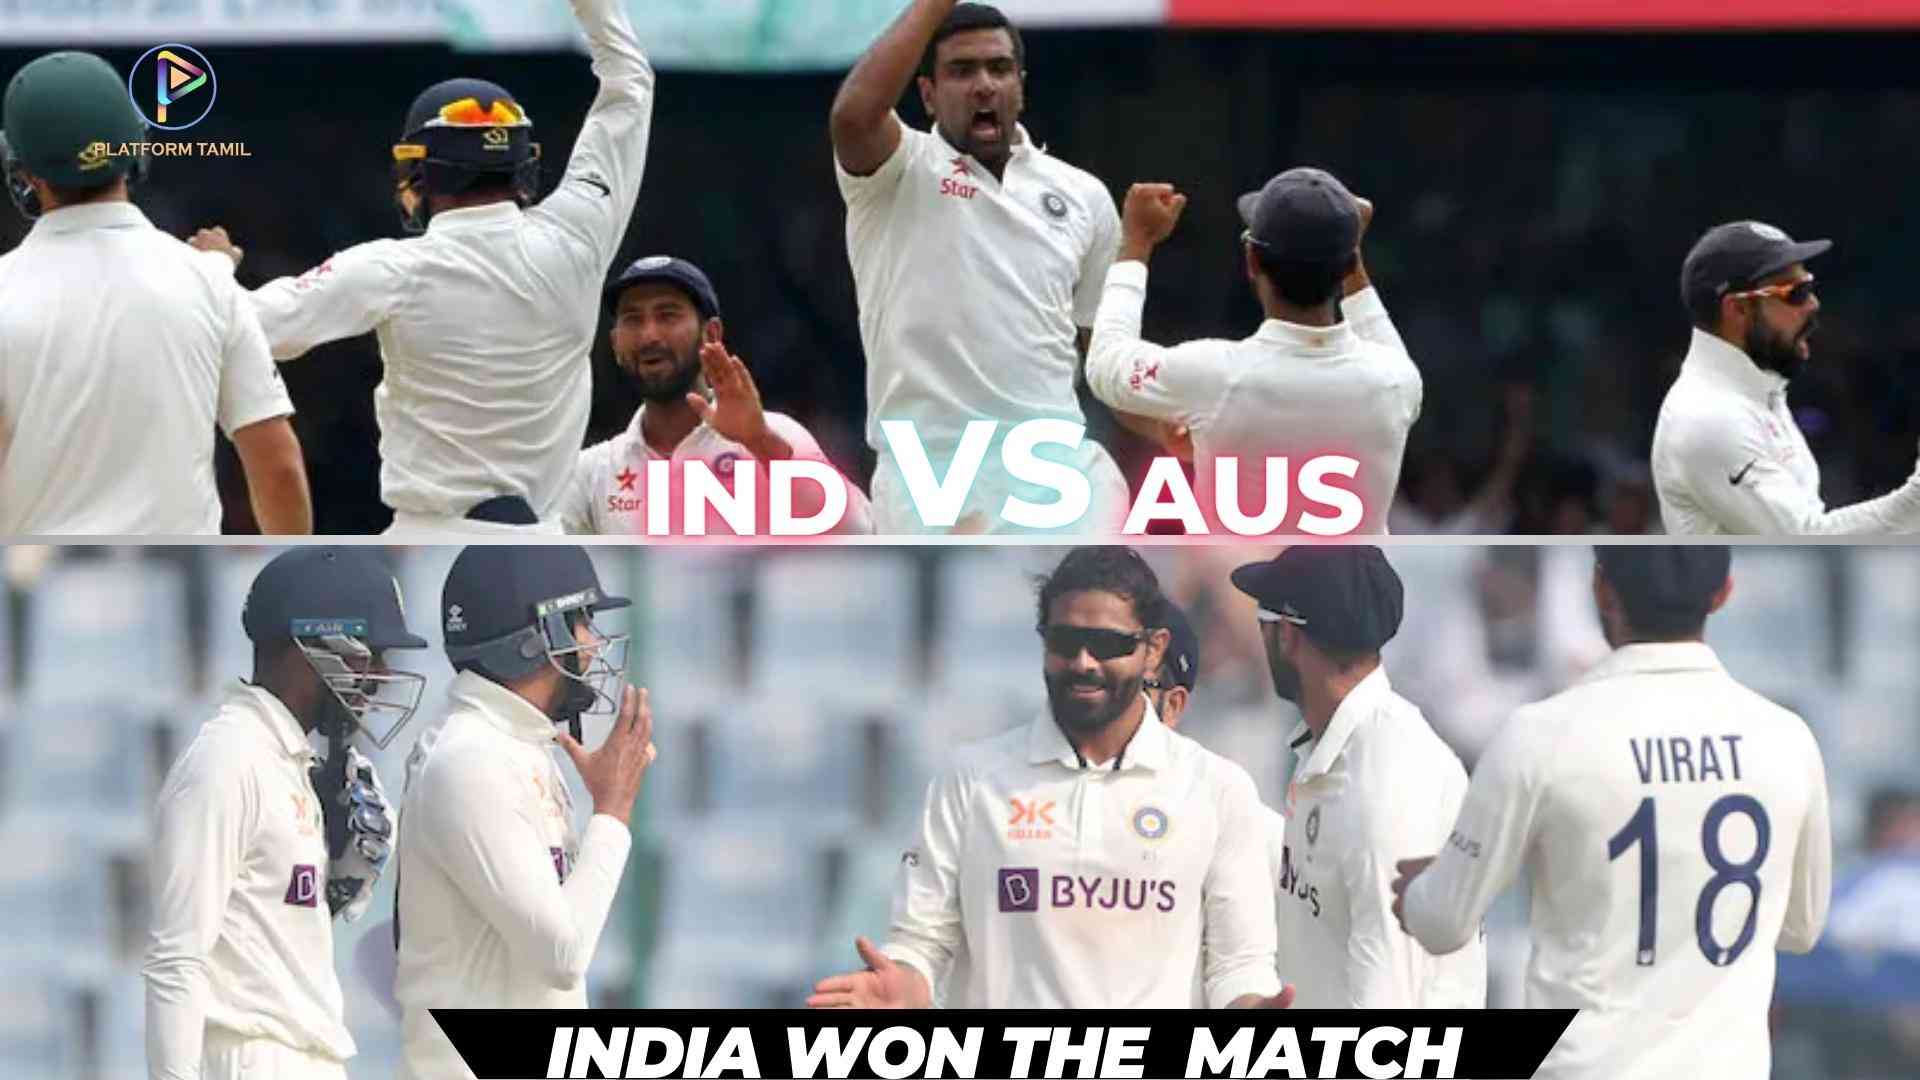 IND VS AUS 2nd Test - Platform Tamil